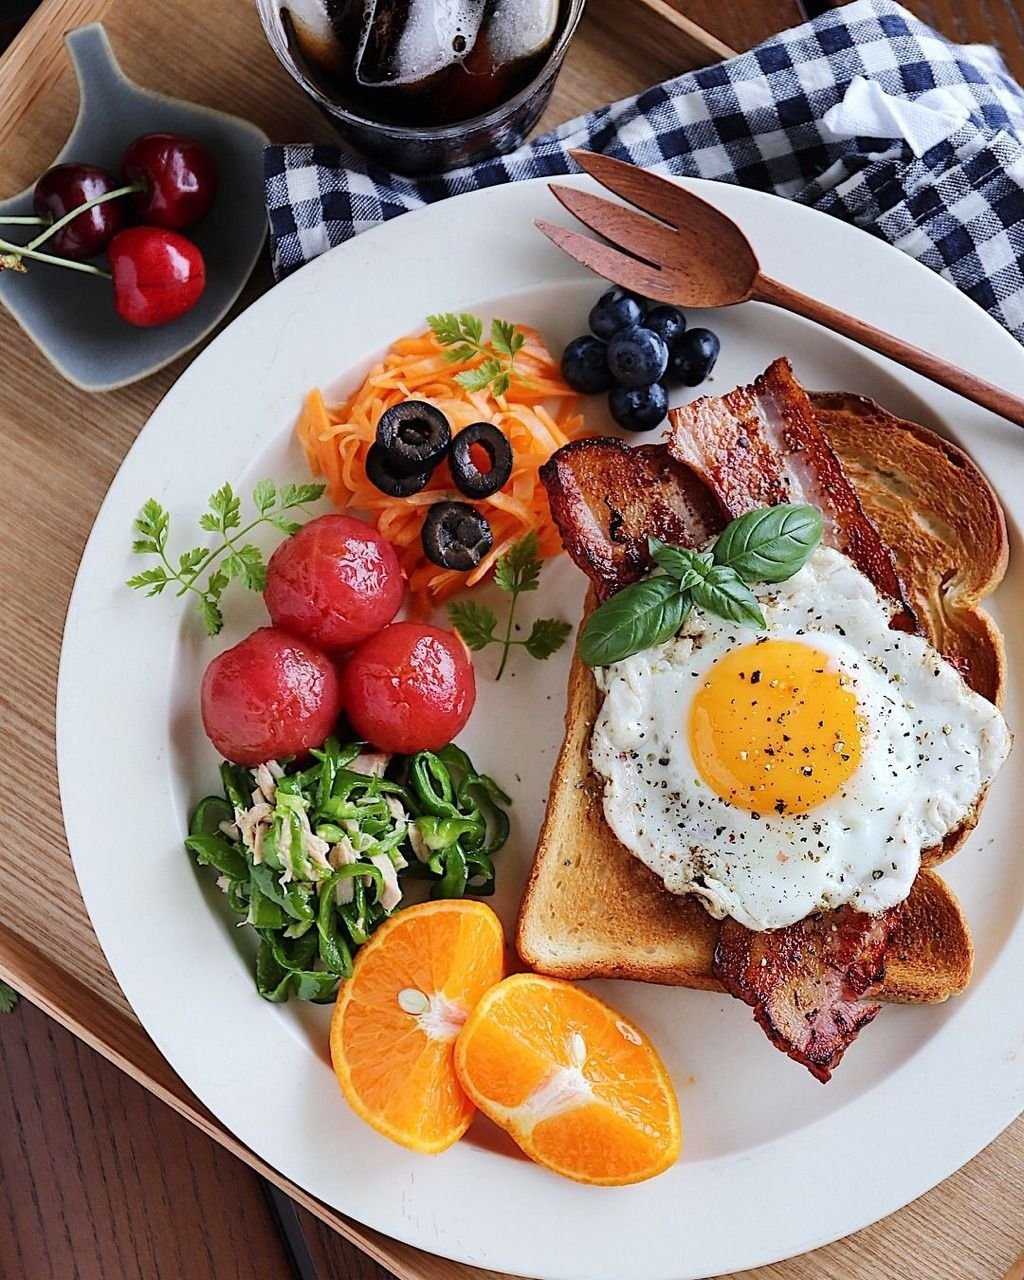 Питаемся правильно: 10 рецептов полезных завтраков для худеющих - толк 25.02.2021